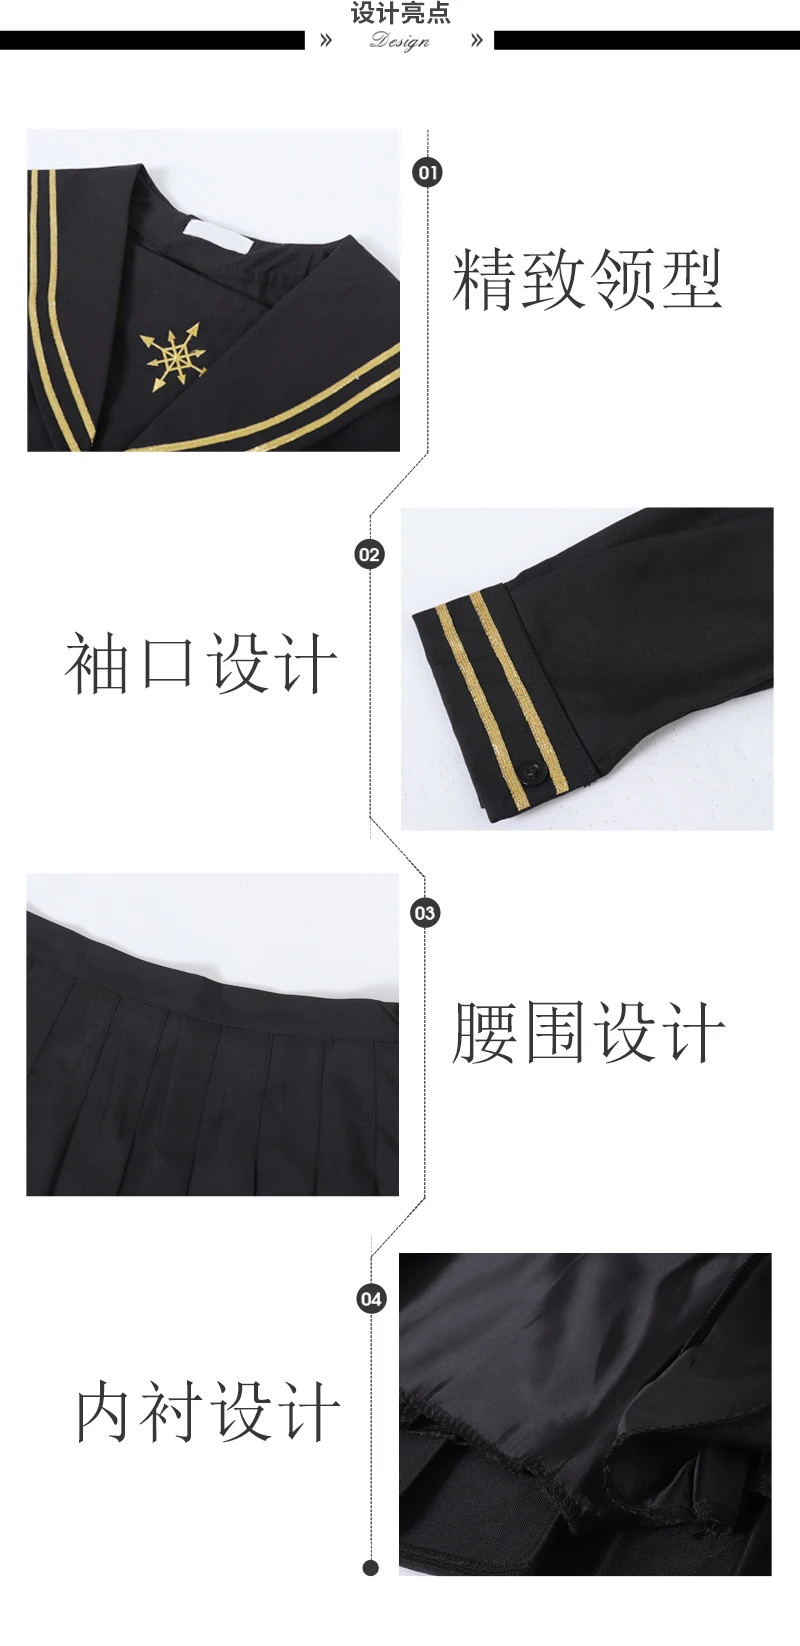 Японская Ретро JK Униформа Лолита костюм новая Корейская Студенческая вышитая рубашка с длинными рукавами+ стильная плиссированная юбка с высокой талией